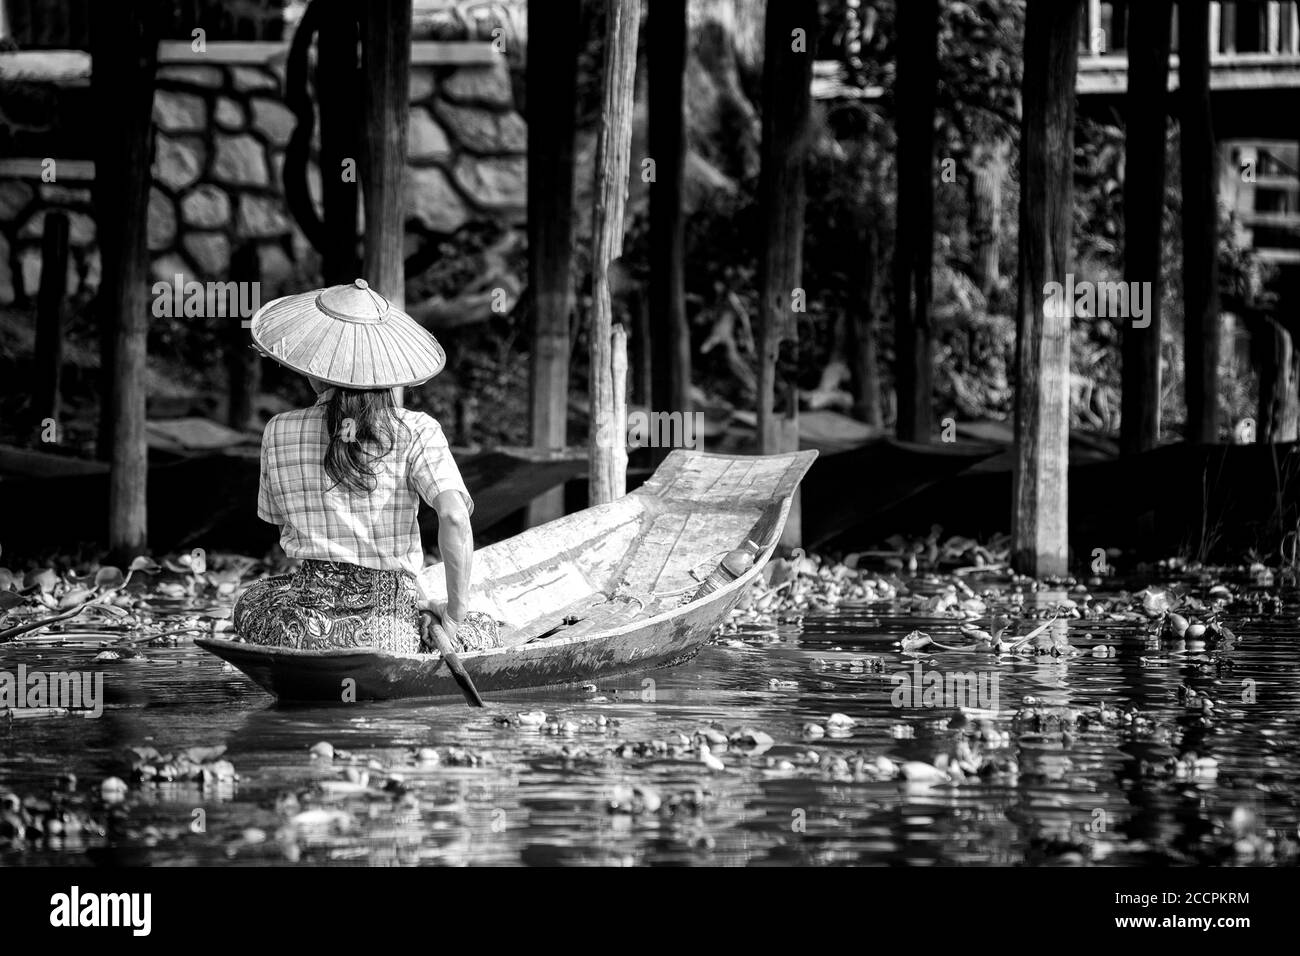 Bilder aus Myanmar, dem Inle-See, seinem berühmten Beinrudern der Intha, der Farbe der Seenspiegelungen und dem asiatischen Lebensstil auf dem Inle-See Stockfoto